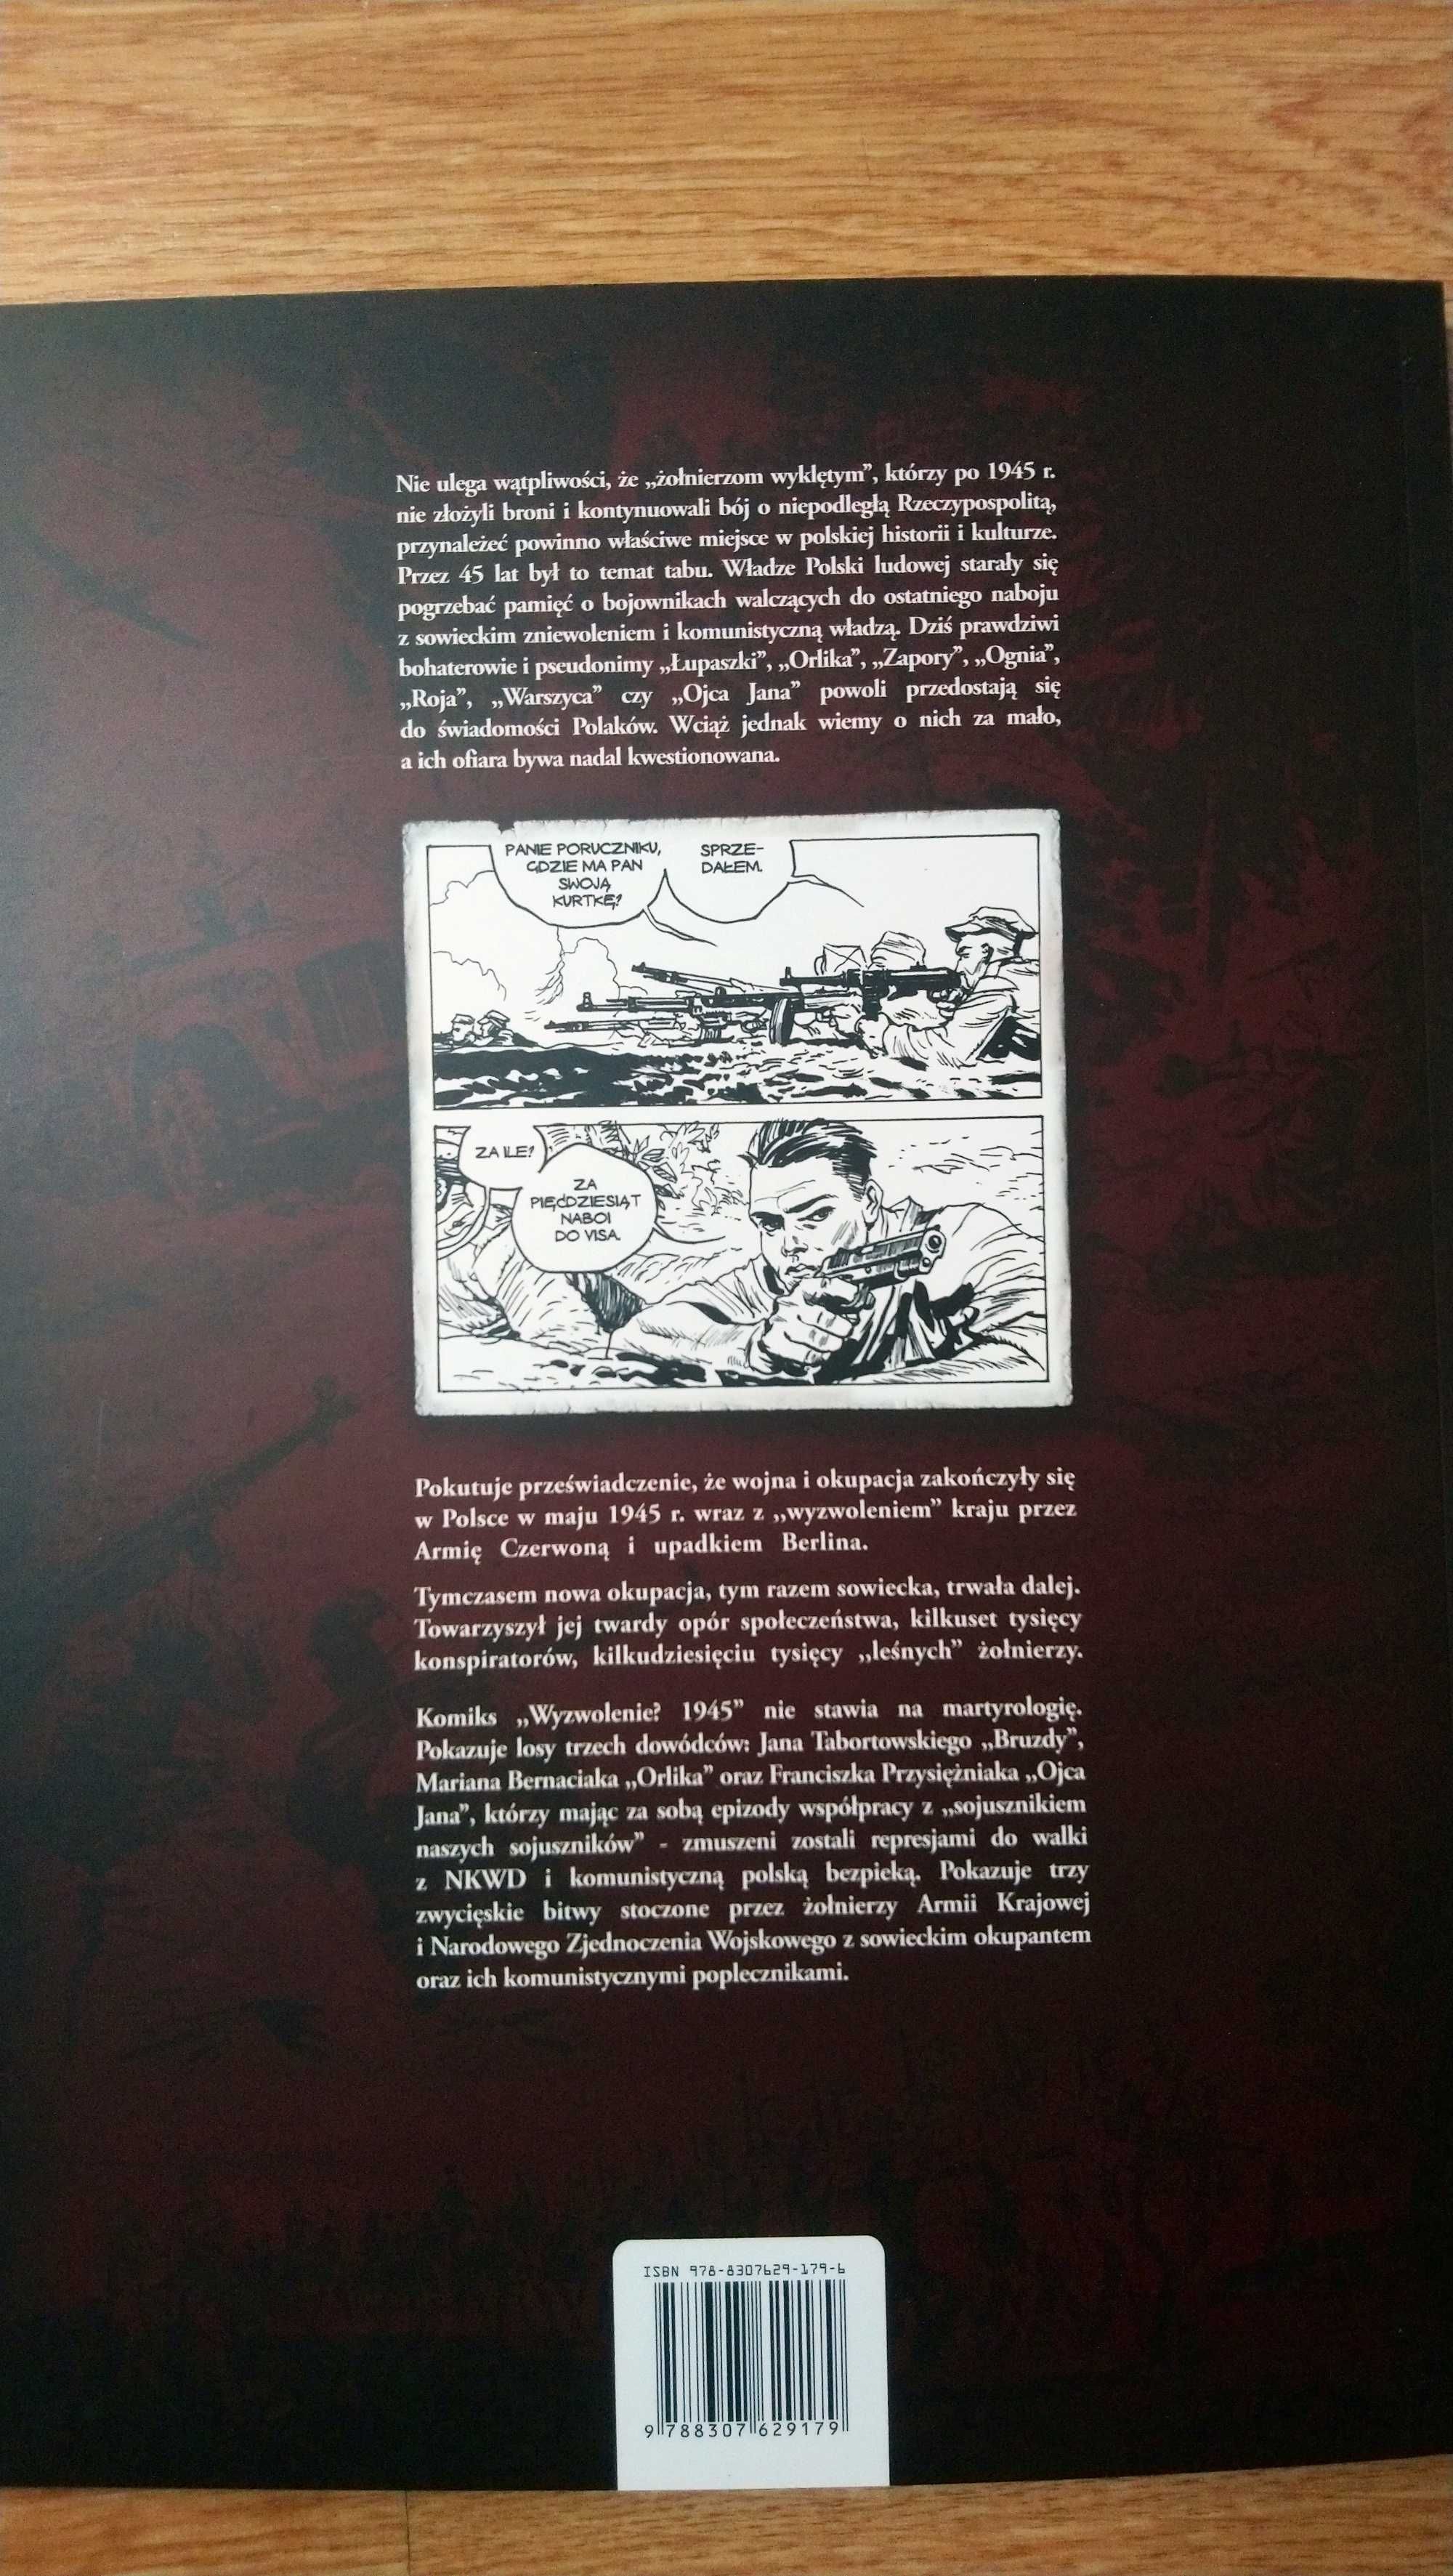 Komiks historyczny Wyzwolenie? 1945 IPN